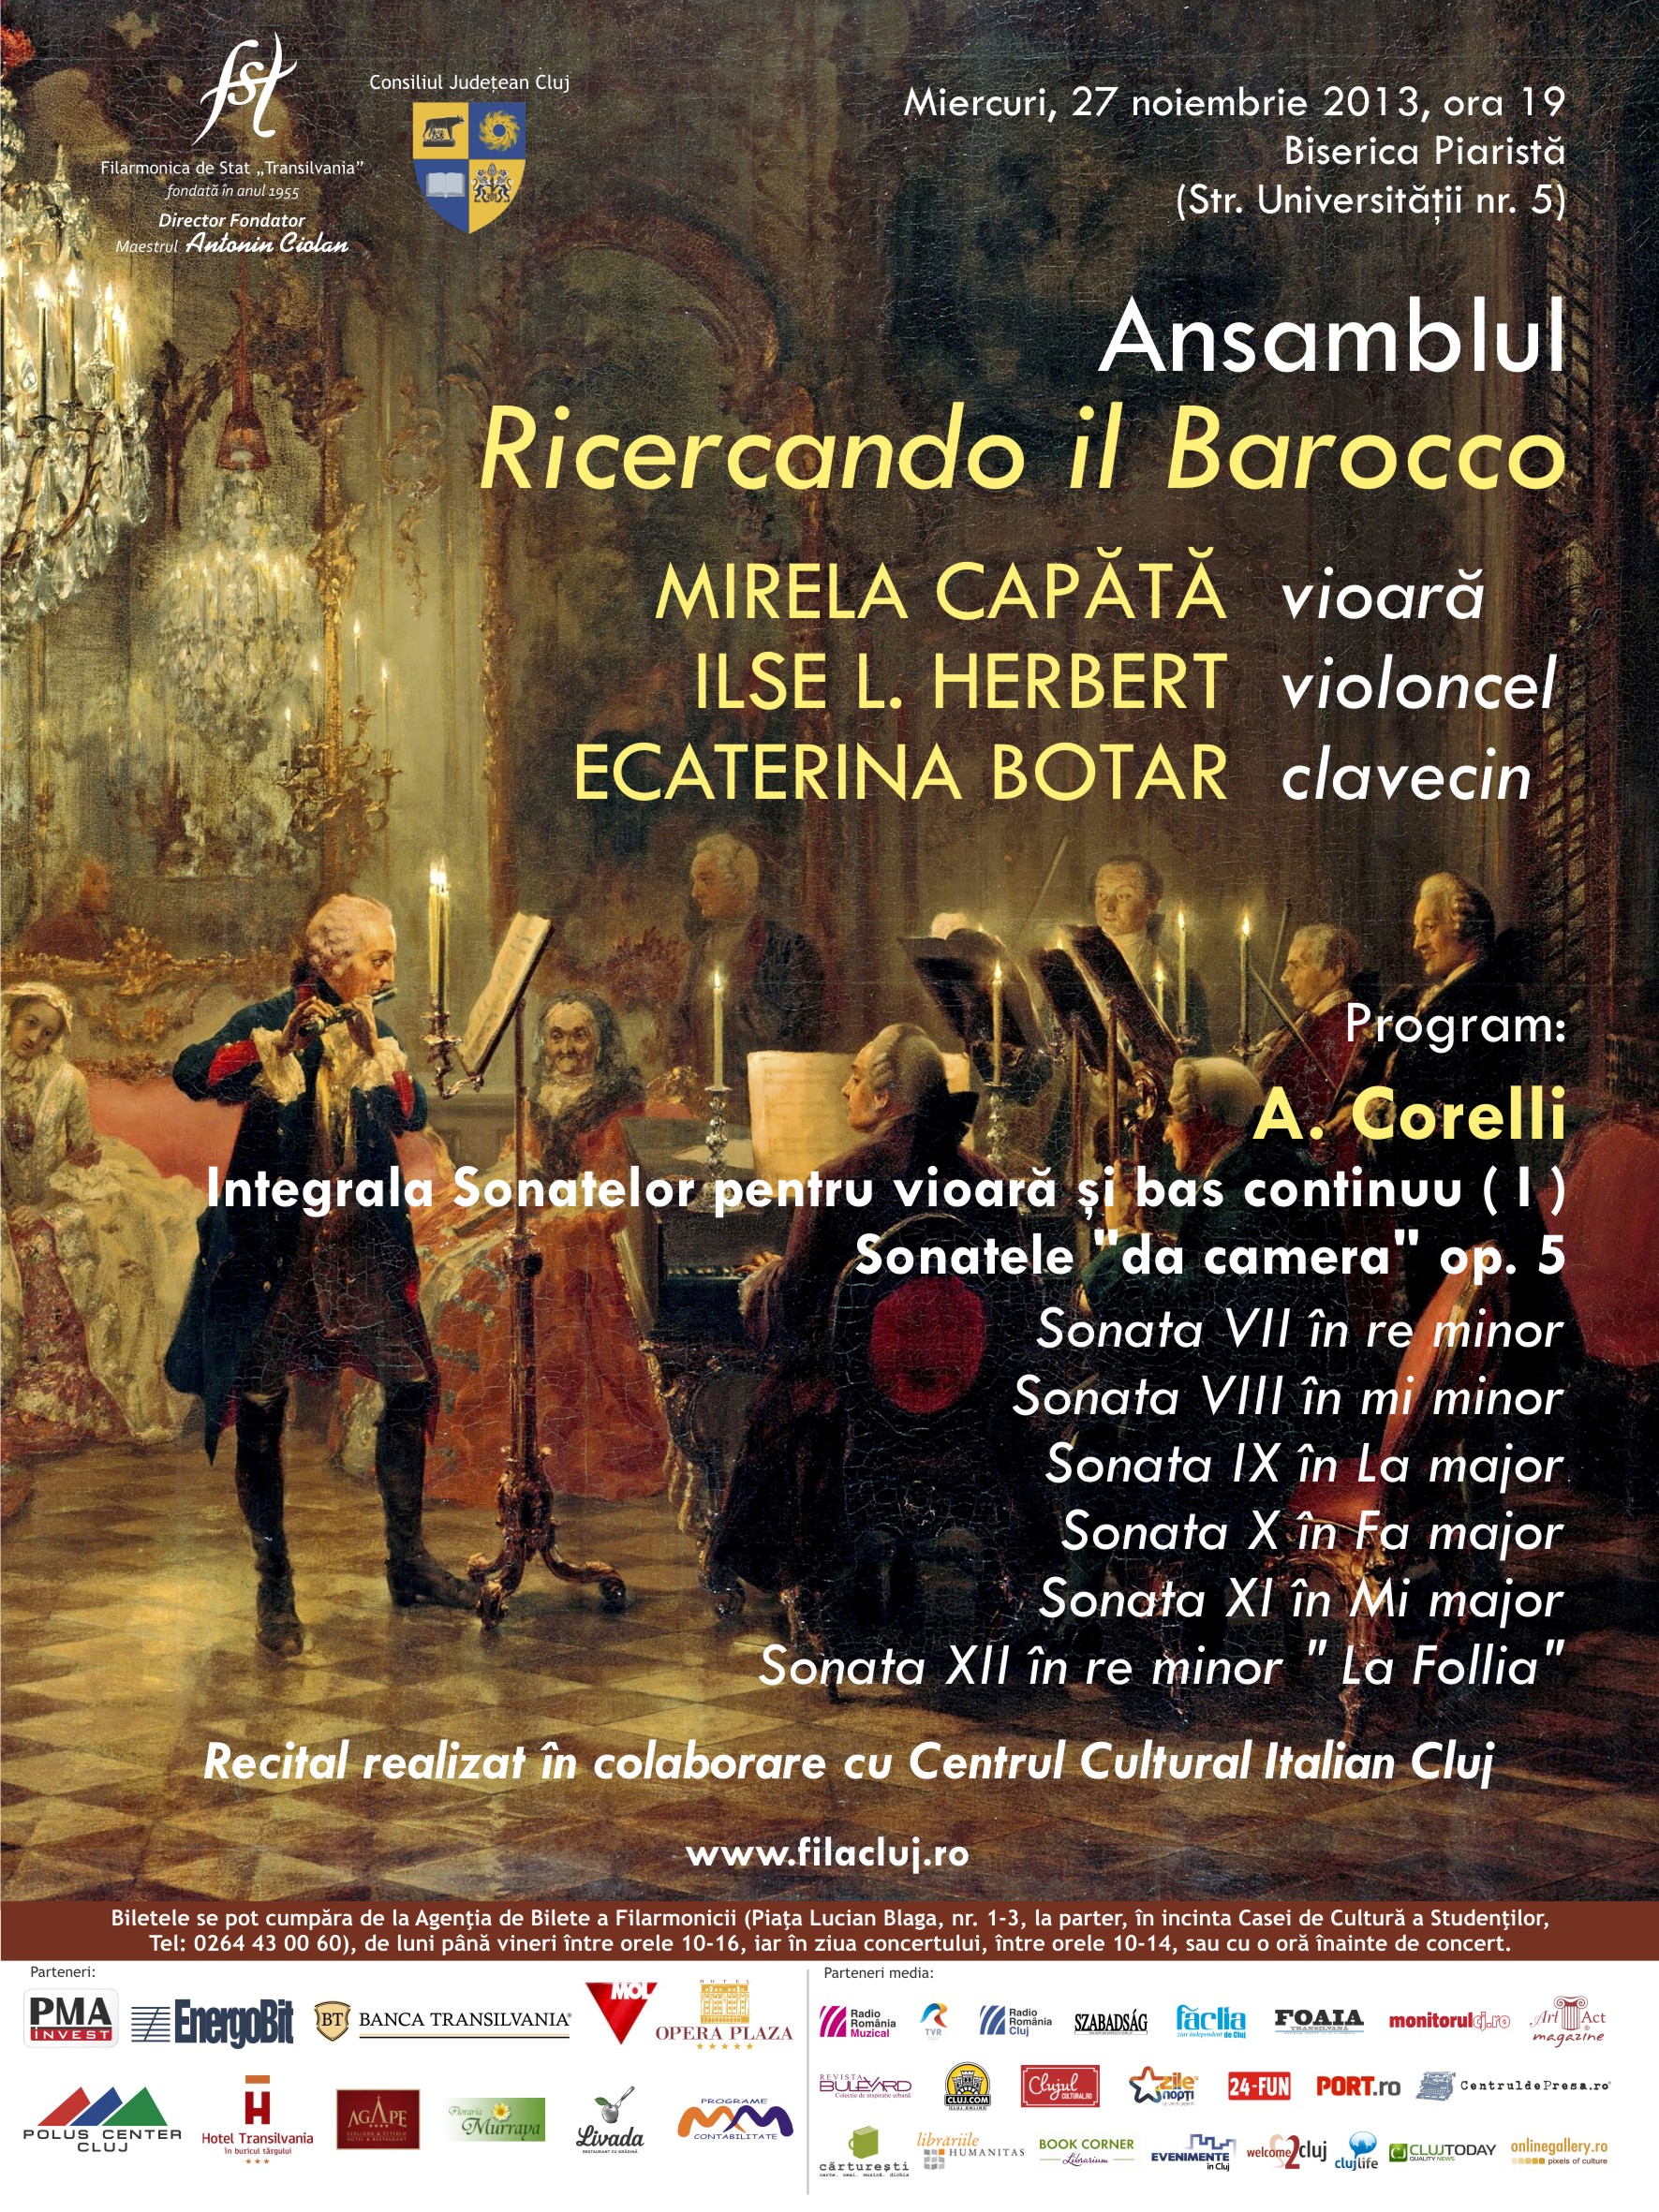 Sonatele lui A.Corelli cu Ricercando il Barocco- 27 nov